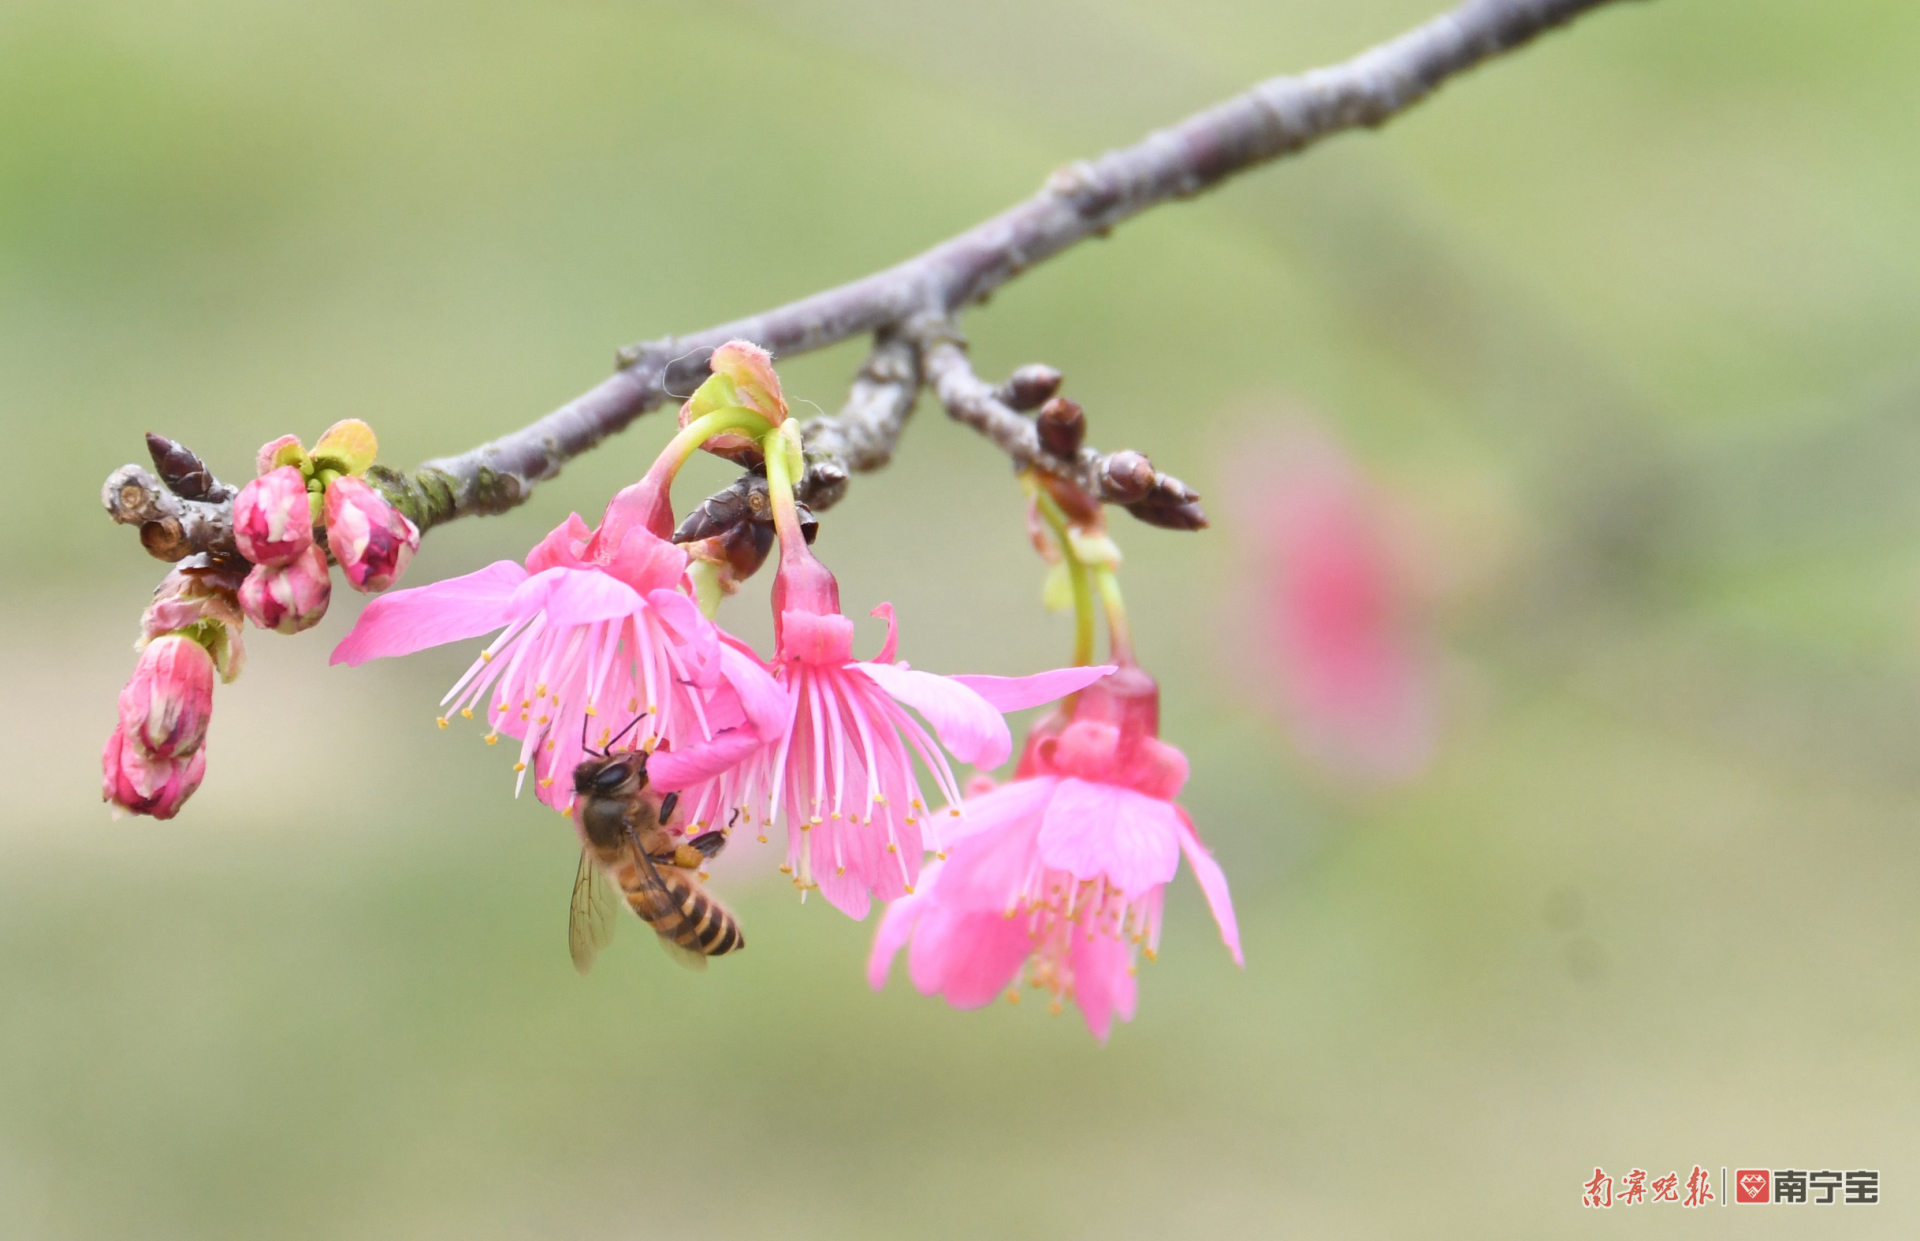 融融暖意叫醒春之歌 石门公园的樱花绽放了！